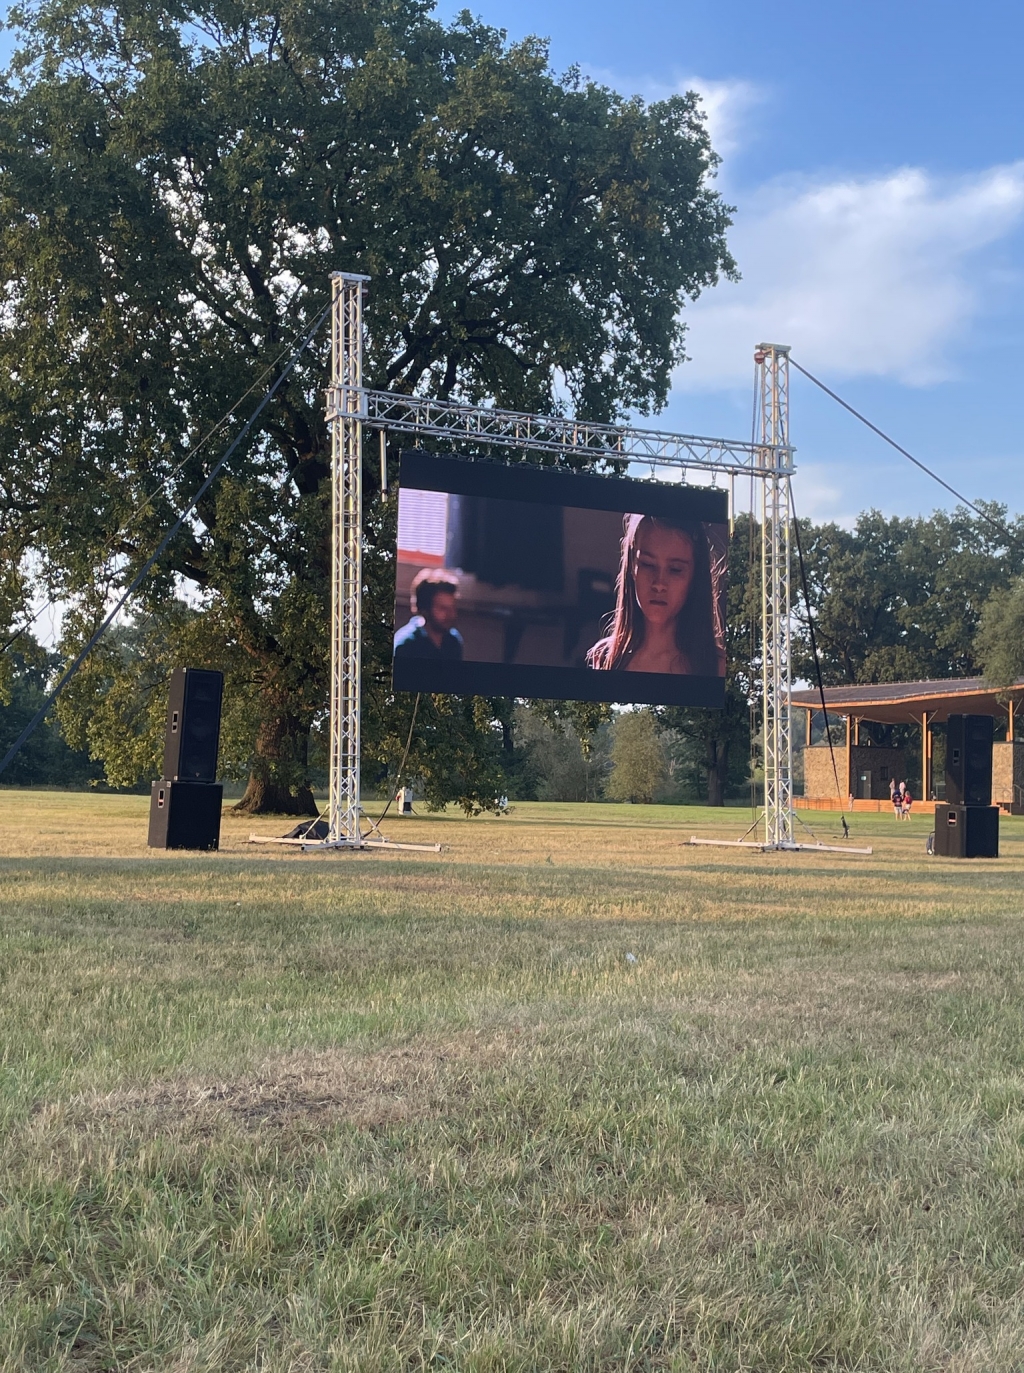 Obraz: Pochmurny dzień. Bytomskie Błonia - łąka w pobliżu Odry, kino w plenerze. Pośrodku ekran projekcyjny, kolumny w foliowych workach, po lewej w namiocie ekipa techniczna, po prawej częściowo widoczni widzowie.